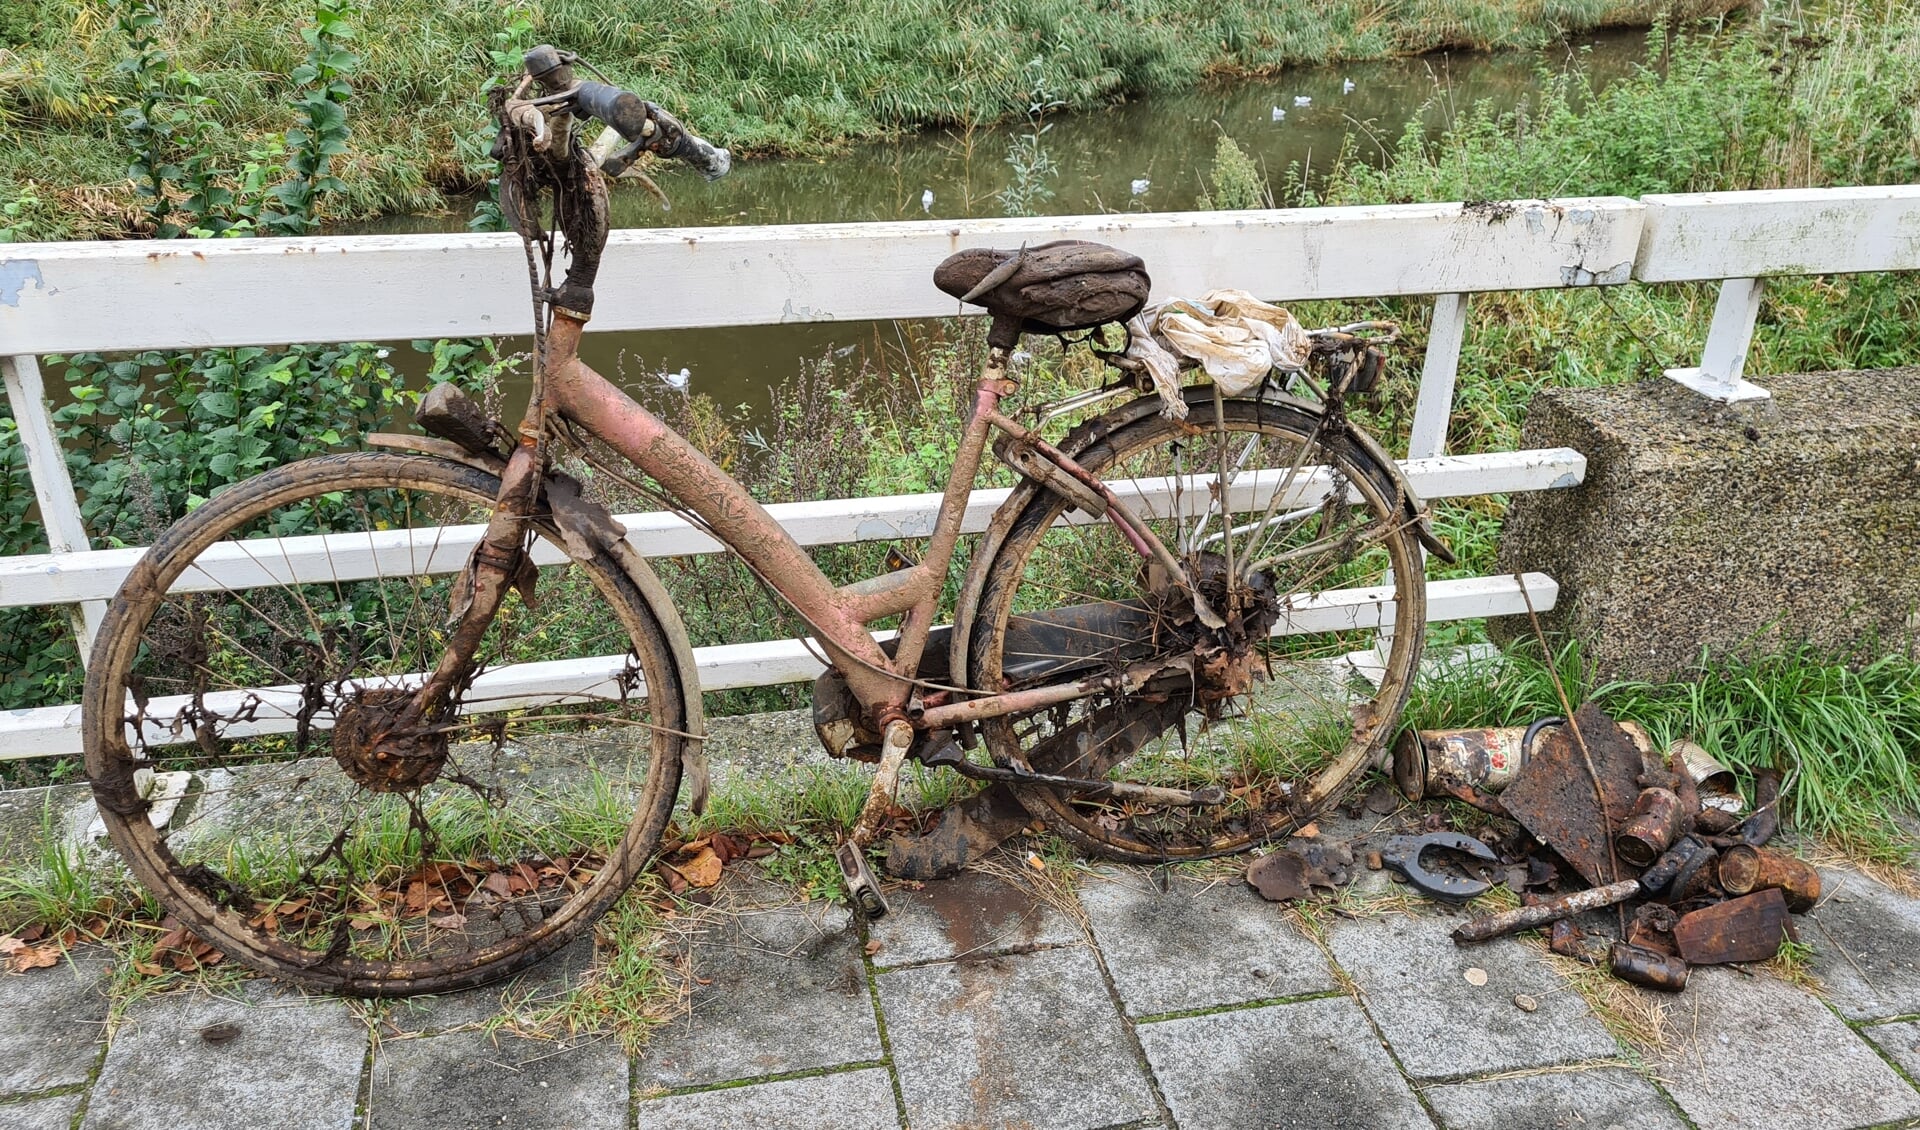 Of deze fiets op slot staat, is niet helemaal duidelijk.